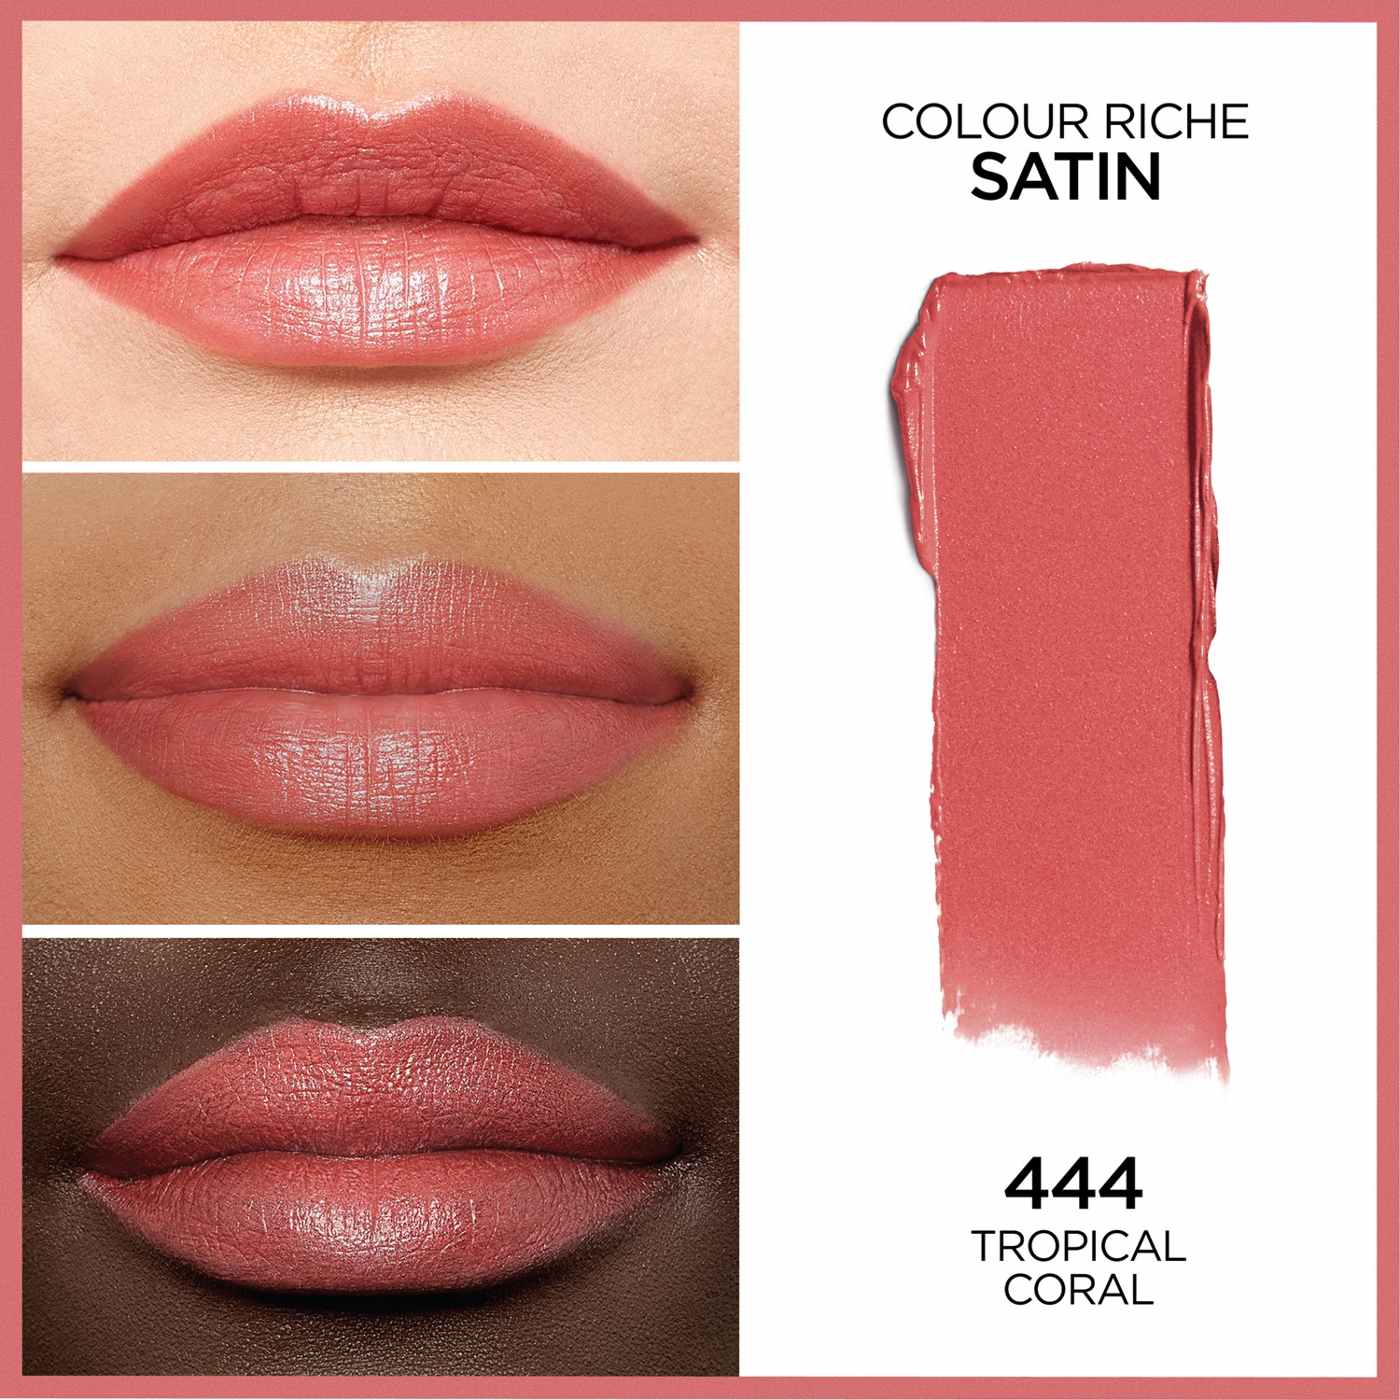 L'Oréal Paris Colour Riche Original Satin Lipstick - Tropical Coral; image 3 of 5